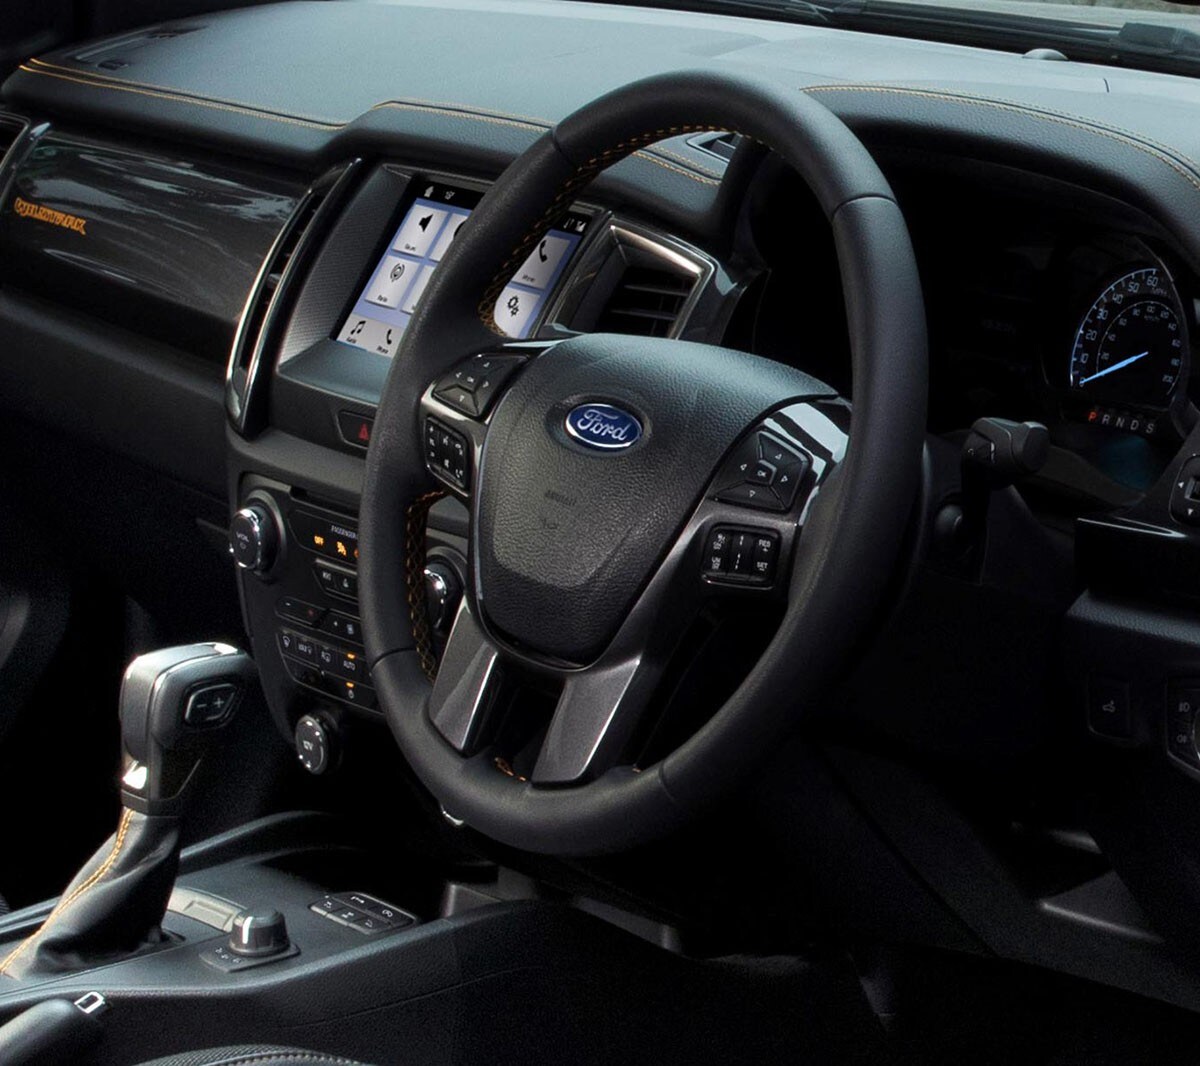 Ford Ranger Wildtrak interior, driver side door view